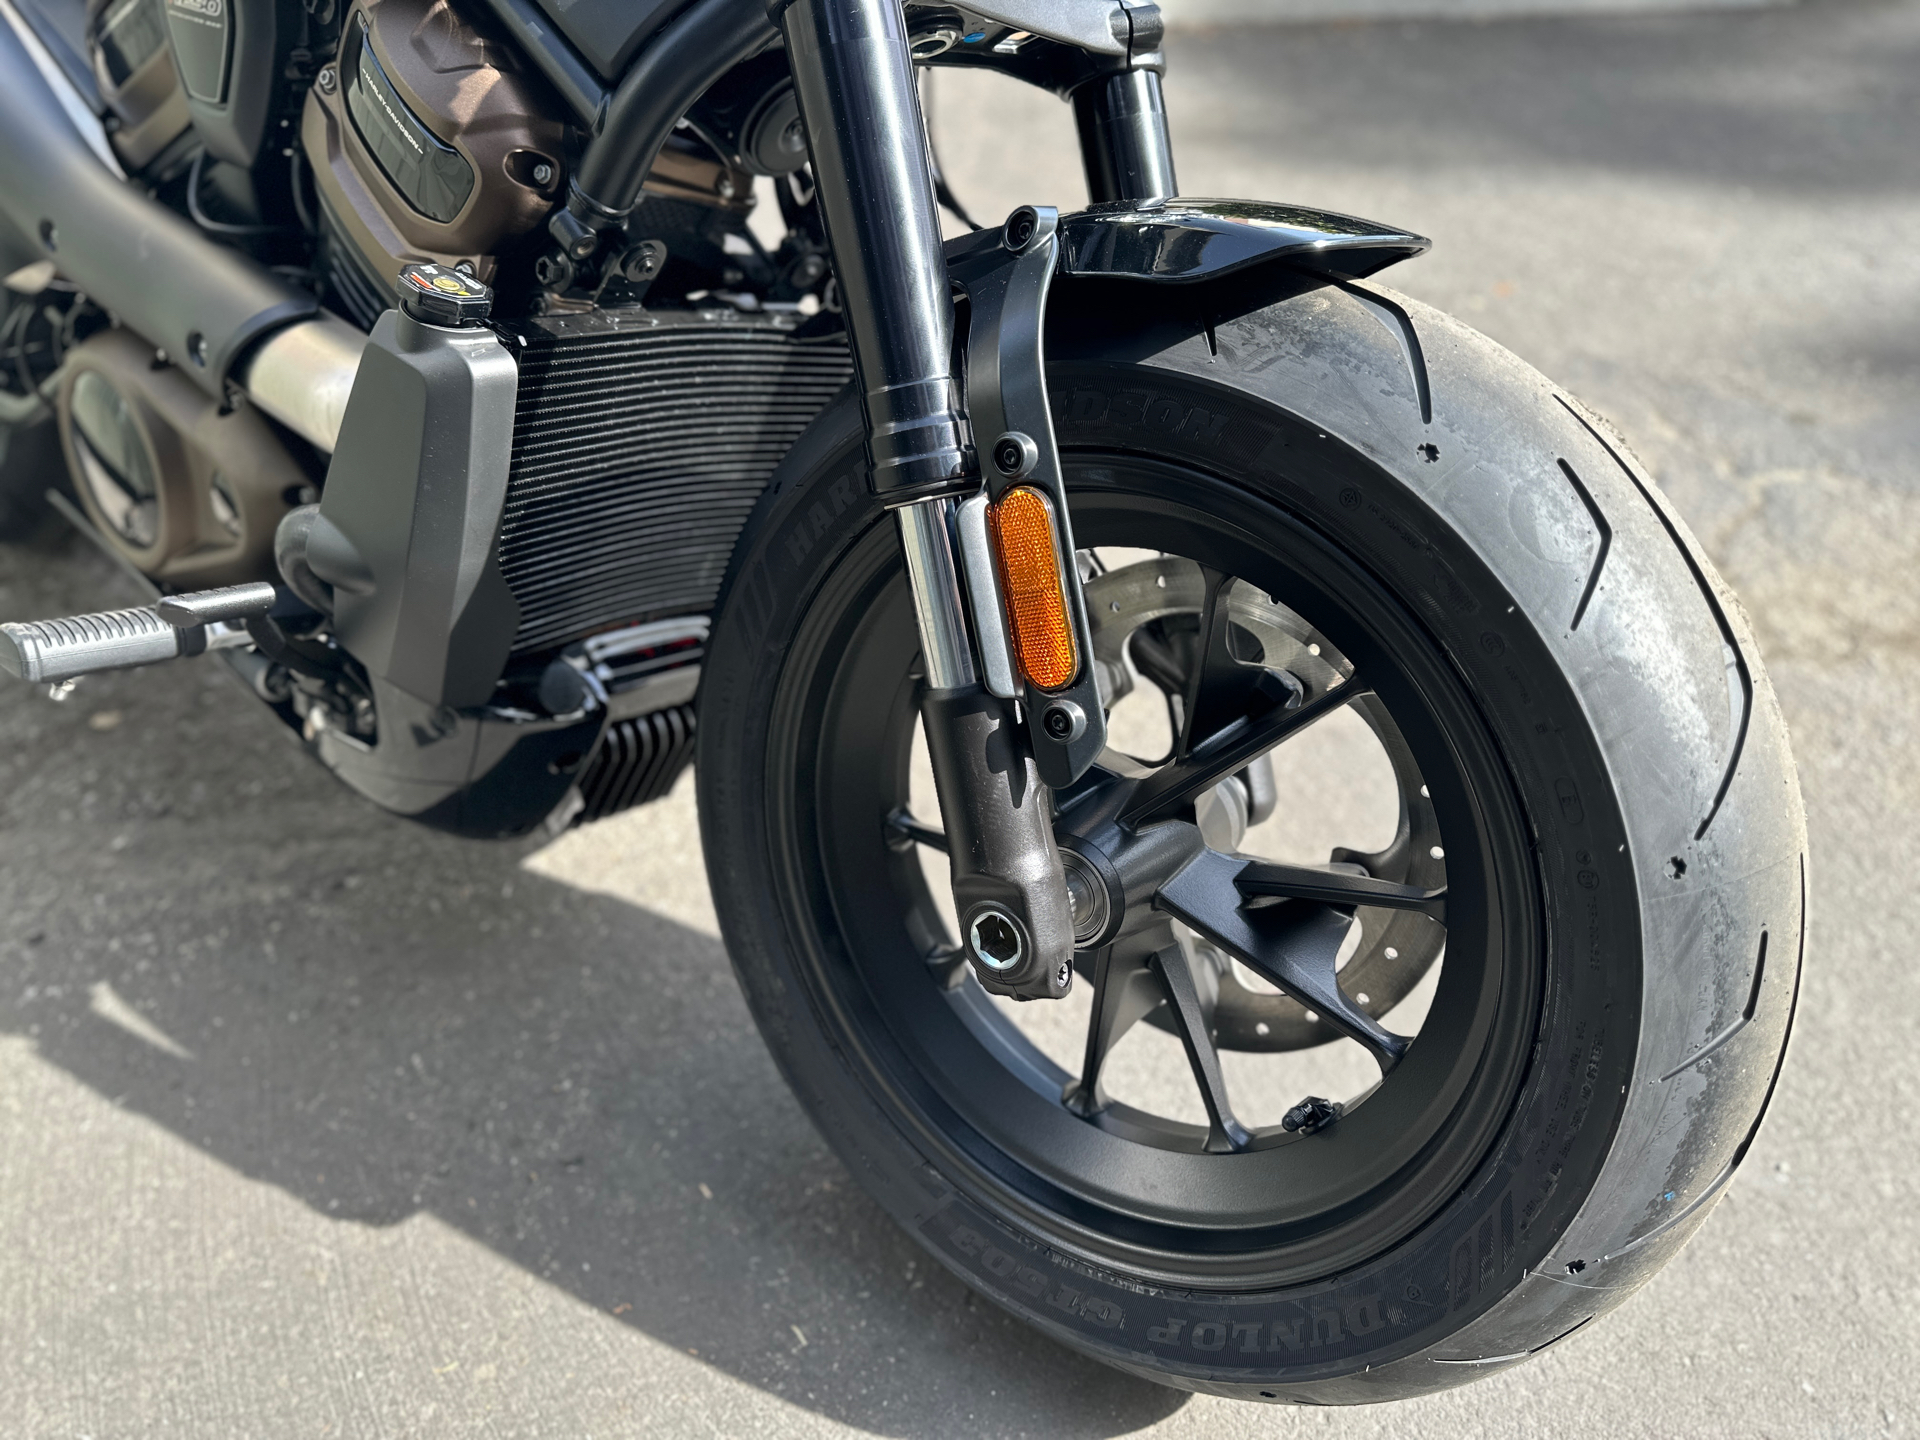 2023 Harley-Davidson Sportster® S in San Jose, California - Photo 8